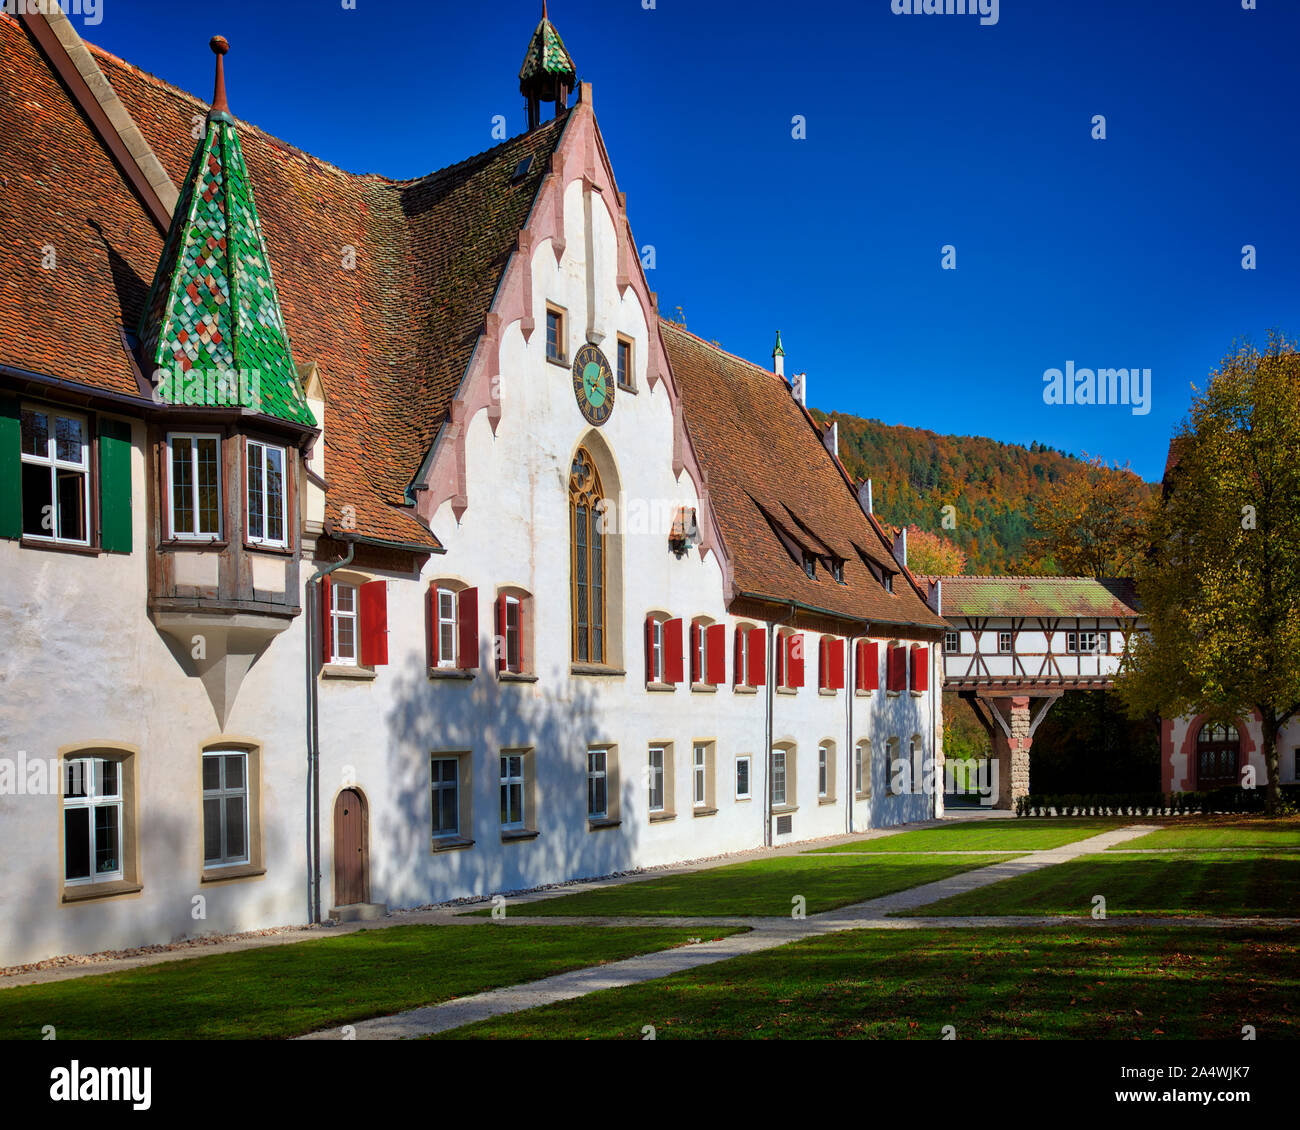 DE - BADEN-WÜRTTEMBERG: Historic Blaubeuren Monastery in the Swabian Jura Stock Photo